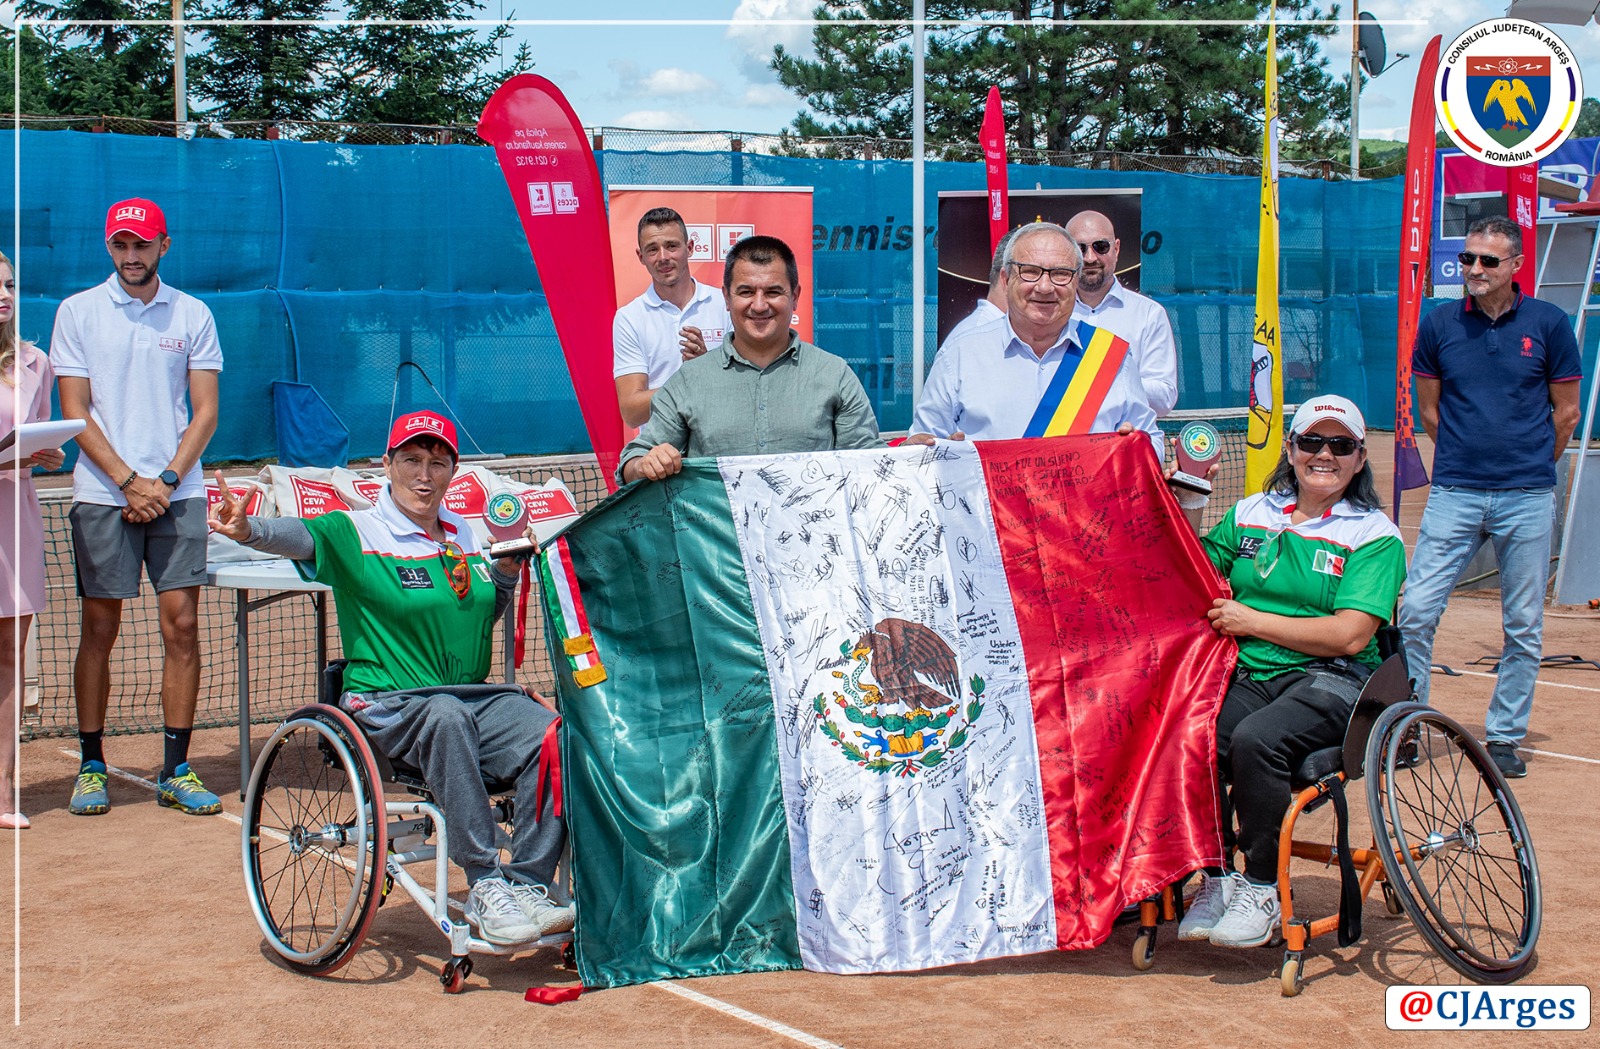 CJ ARGES - Turneul international de tenis destinat persoanelor cu dizabilitati (16).jpeg